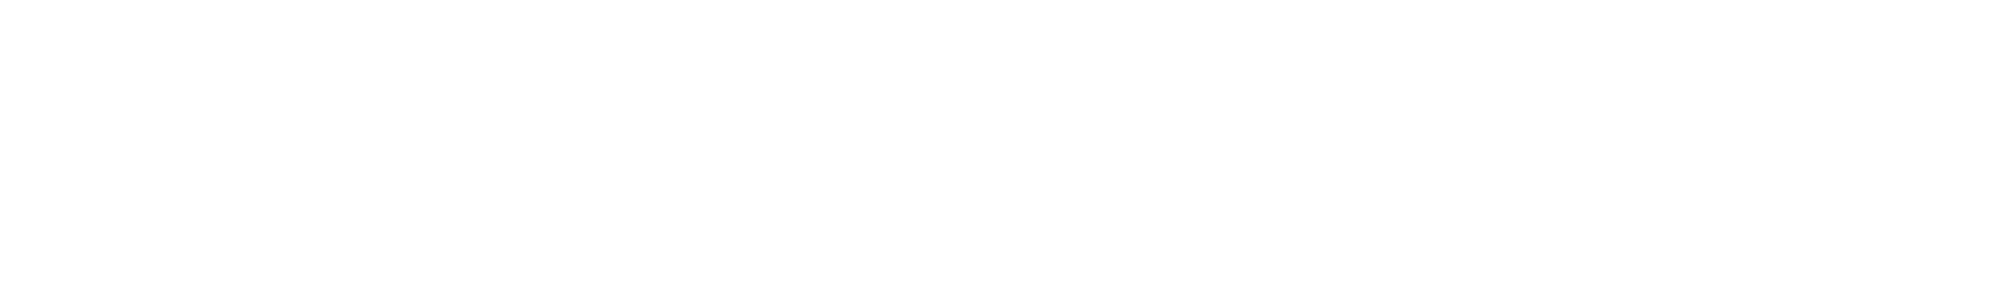 cloudflare-logo-white-horizontal 3x (1)